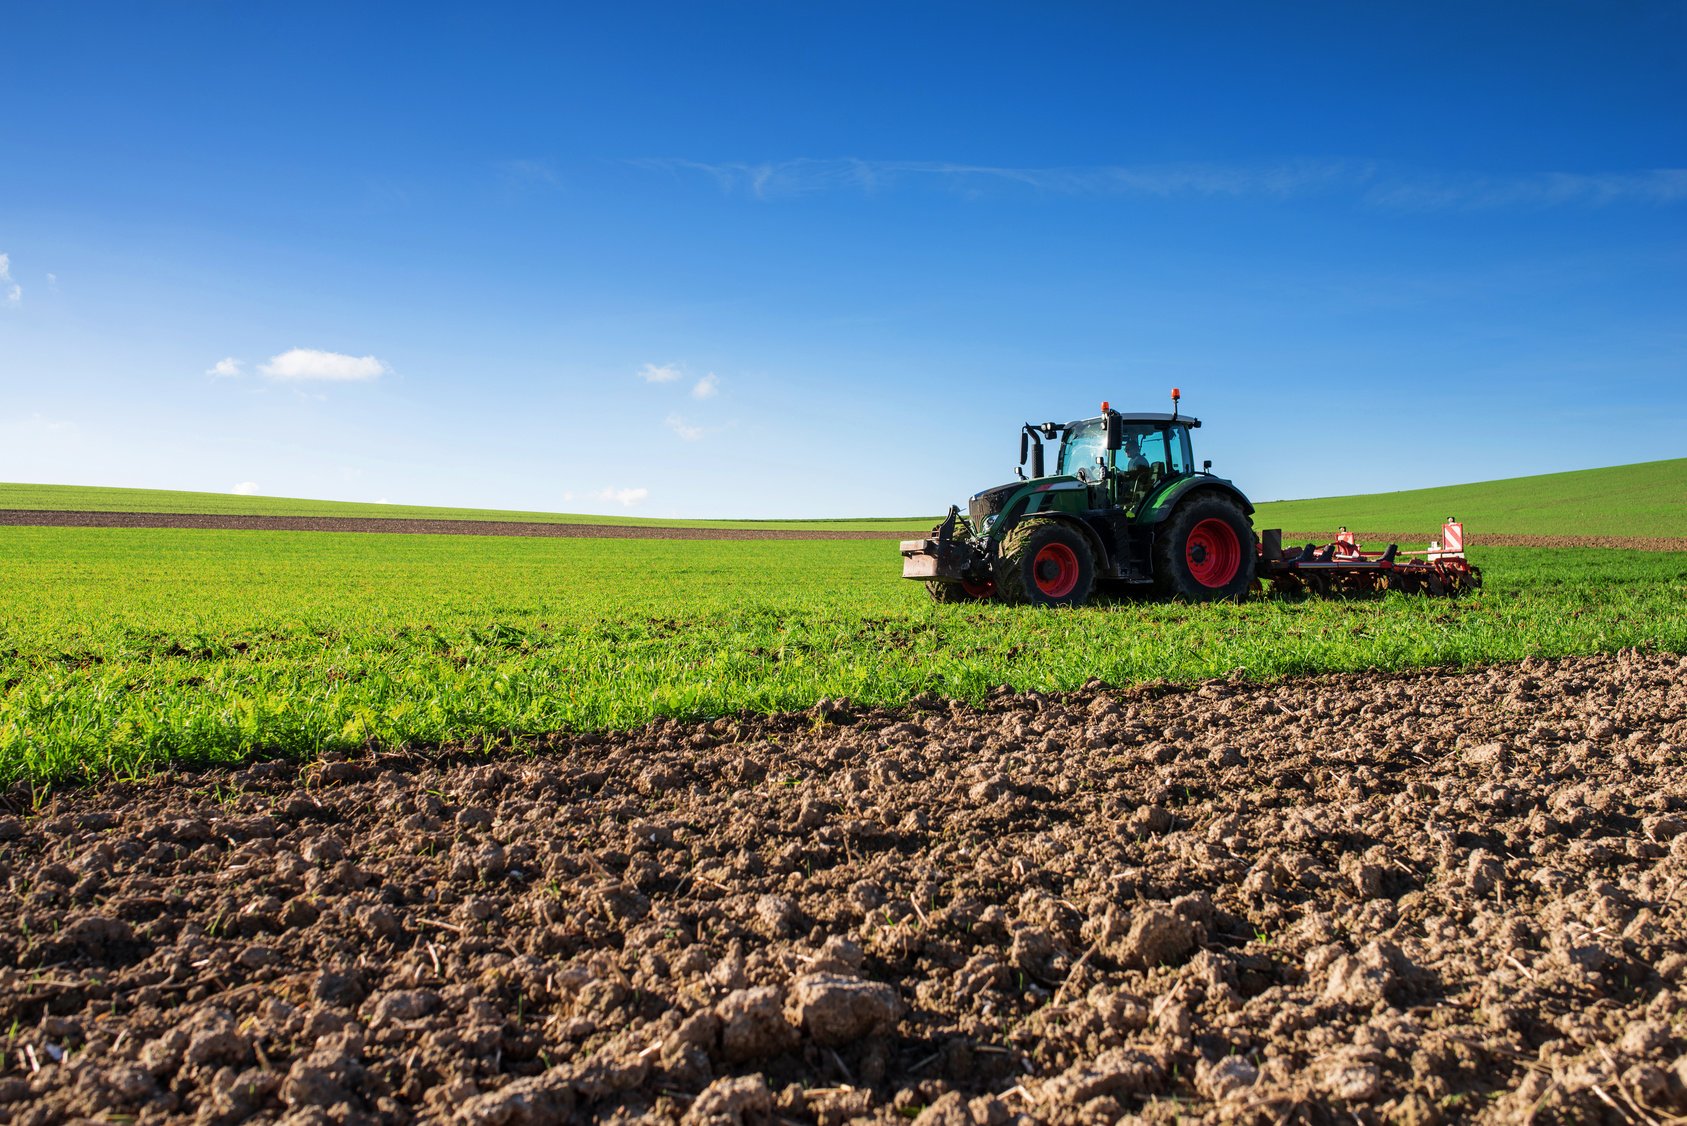 Υπουργείο Αγροτικής Ανάπτυξης και Τροφίμων: Ρυθμίζονται με τροπολογίες ζητήματα ανενεργών αγροτικών συνεταιρισμών και χρήσης ακινήτων σε κατά κύριο επάγγελμα αγρότες